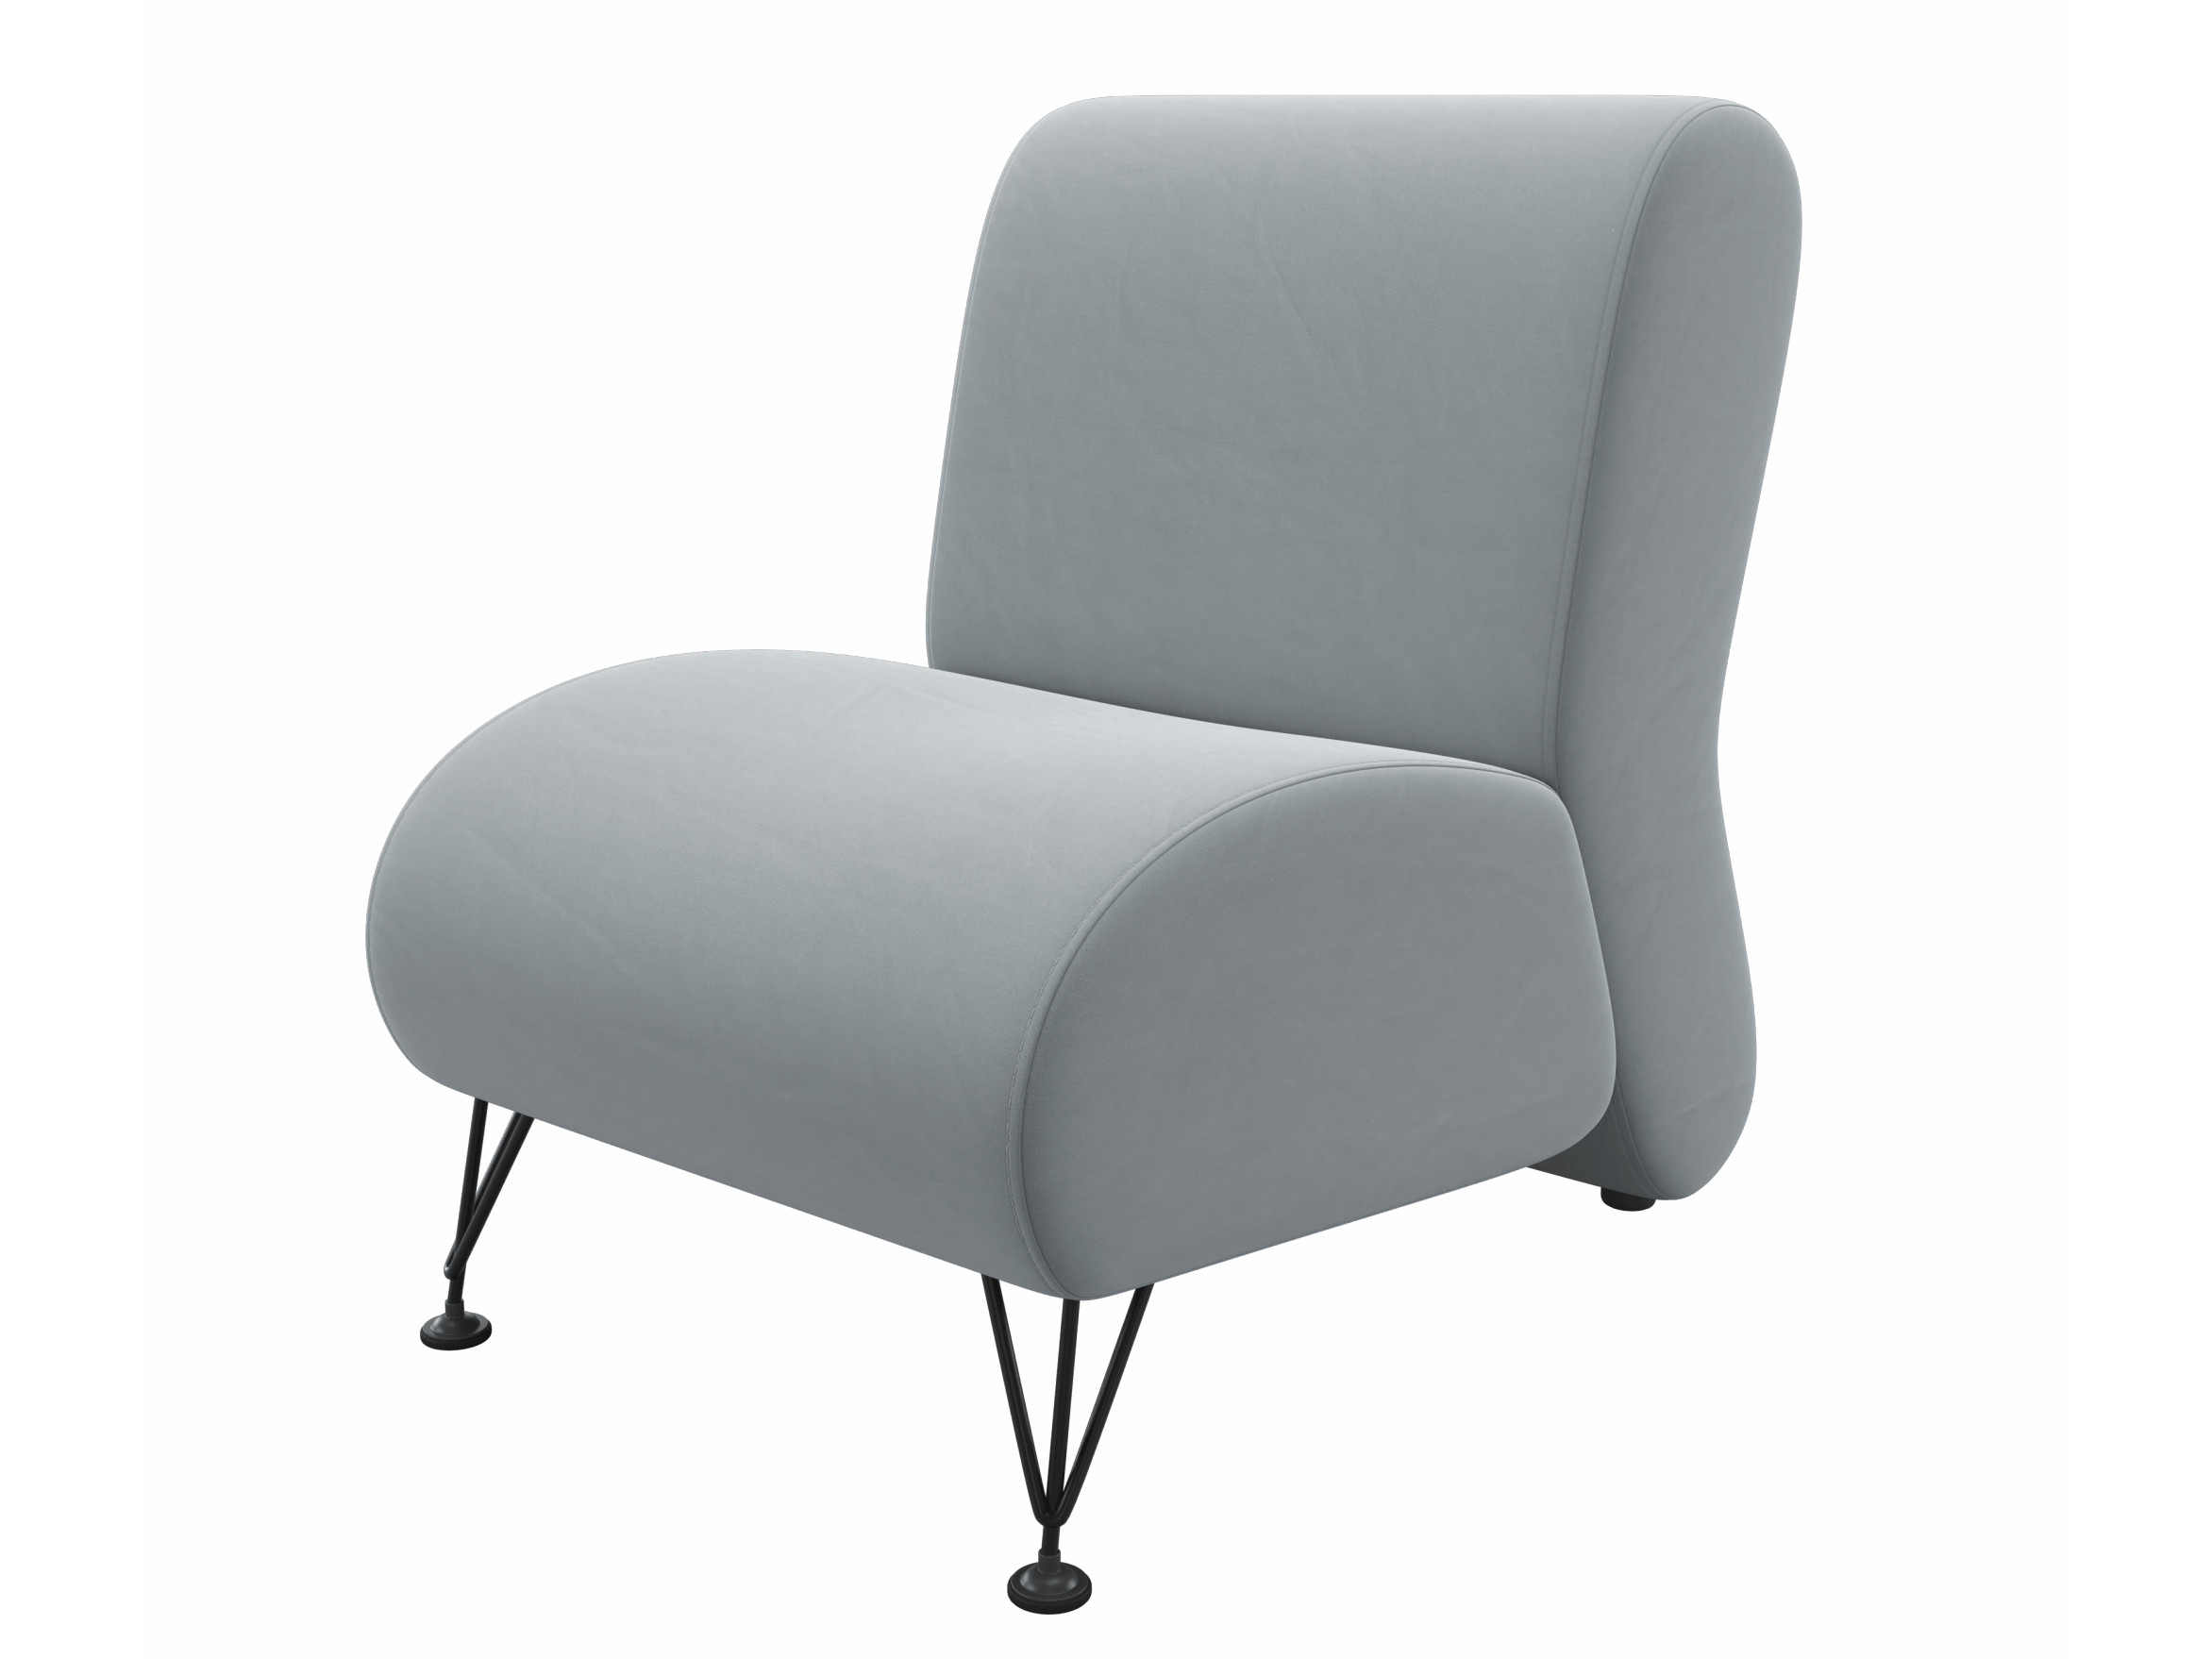 Мягкое дизайнерское кресло Pati серый MebelVia серый, Велюр b